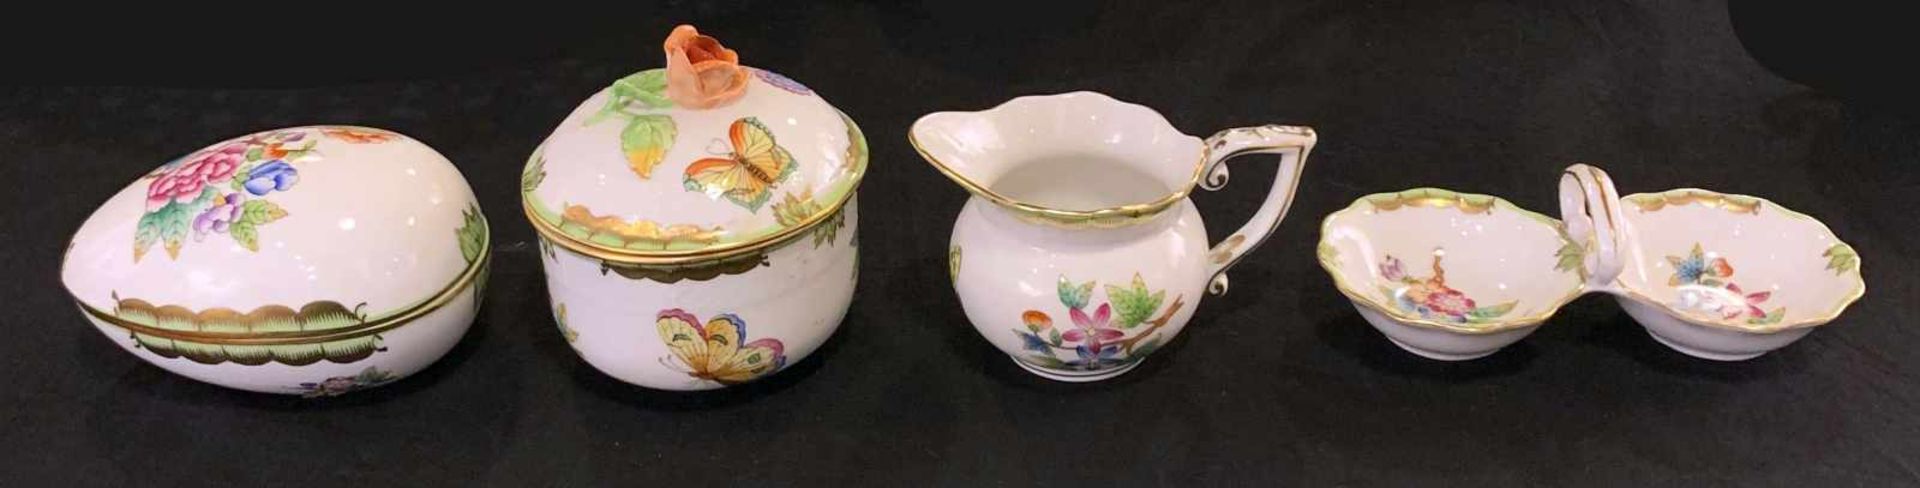 Konvolut, Service, Herend Victoria, Goldrand. Herend Queen Victoria porcelain dinnerware. 6 x - Bild 3 aus 20